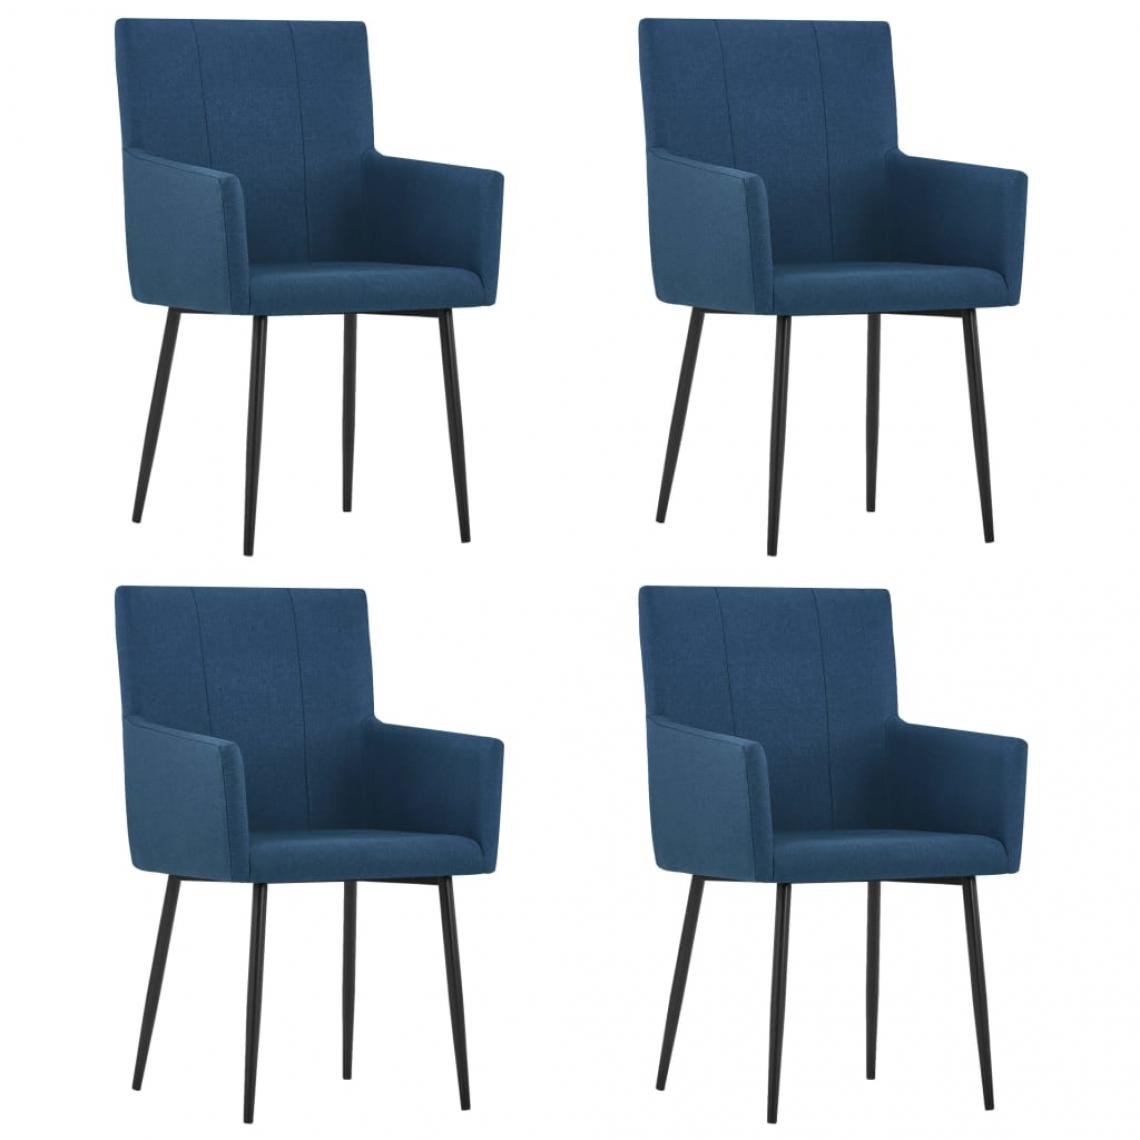 Decoshop26 - Lot de 4 chaises de salle à manger cuisine avec accoudoirs design moderne tissu bleu CDS021200 - Chaises